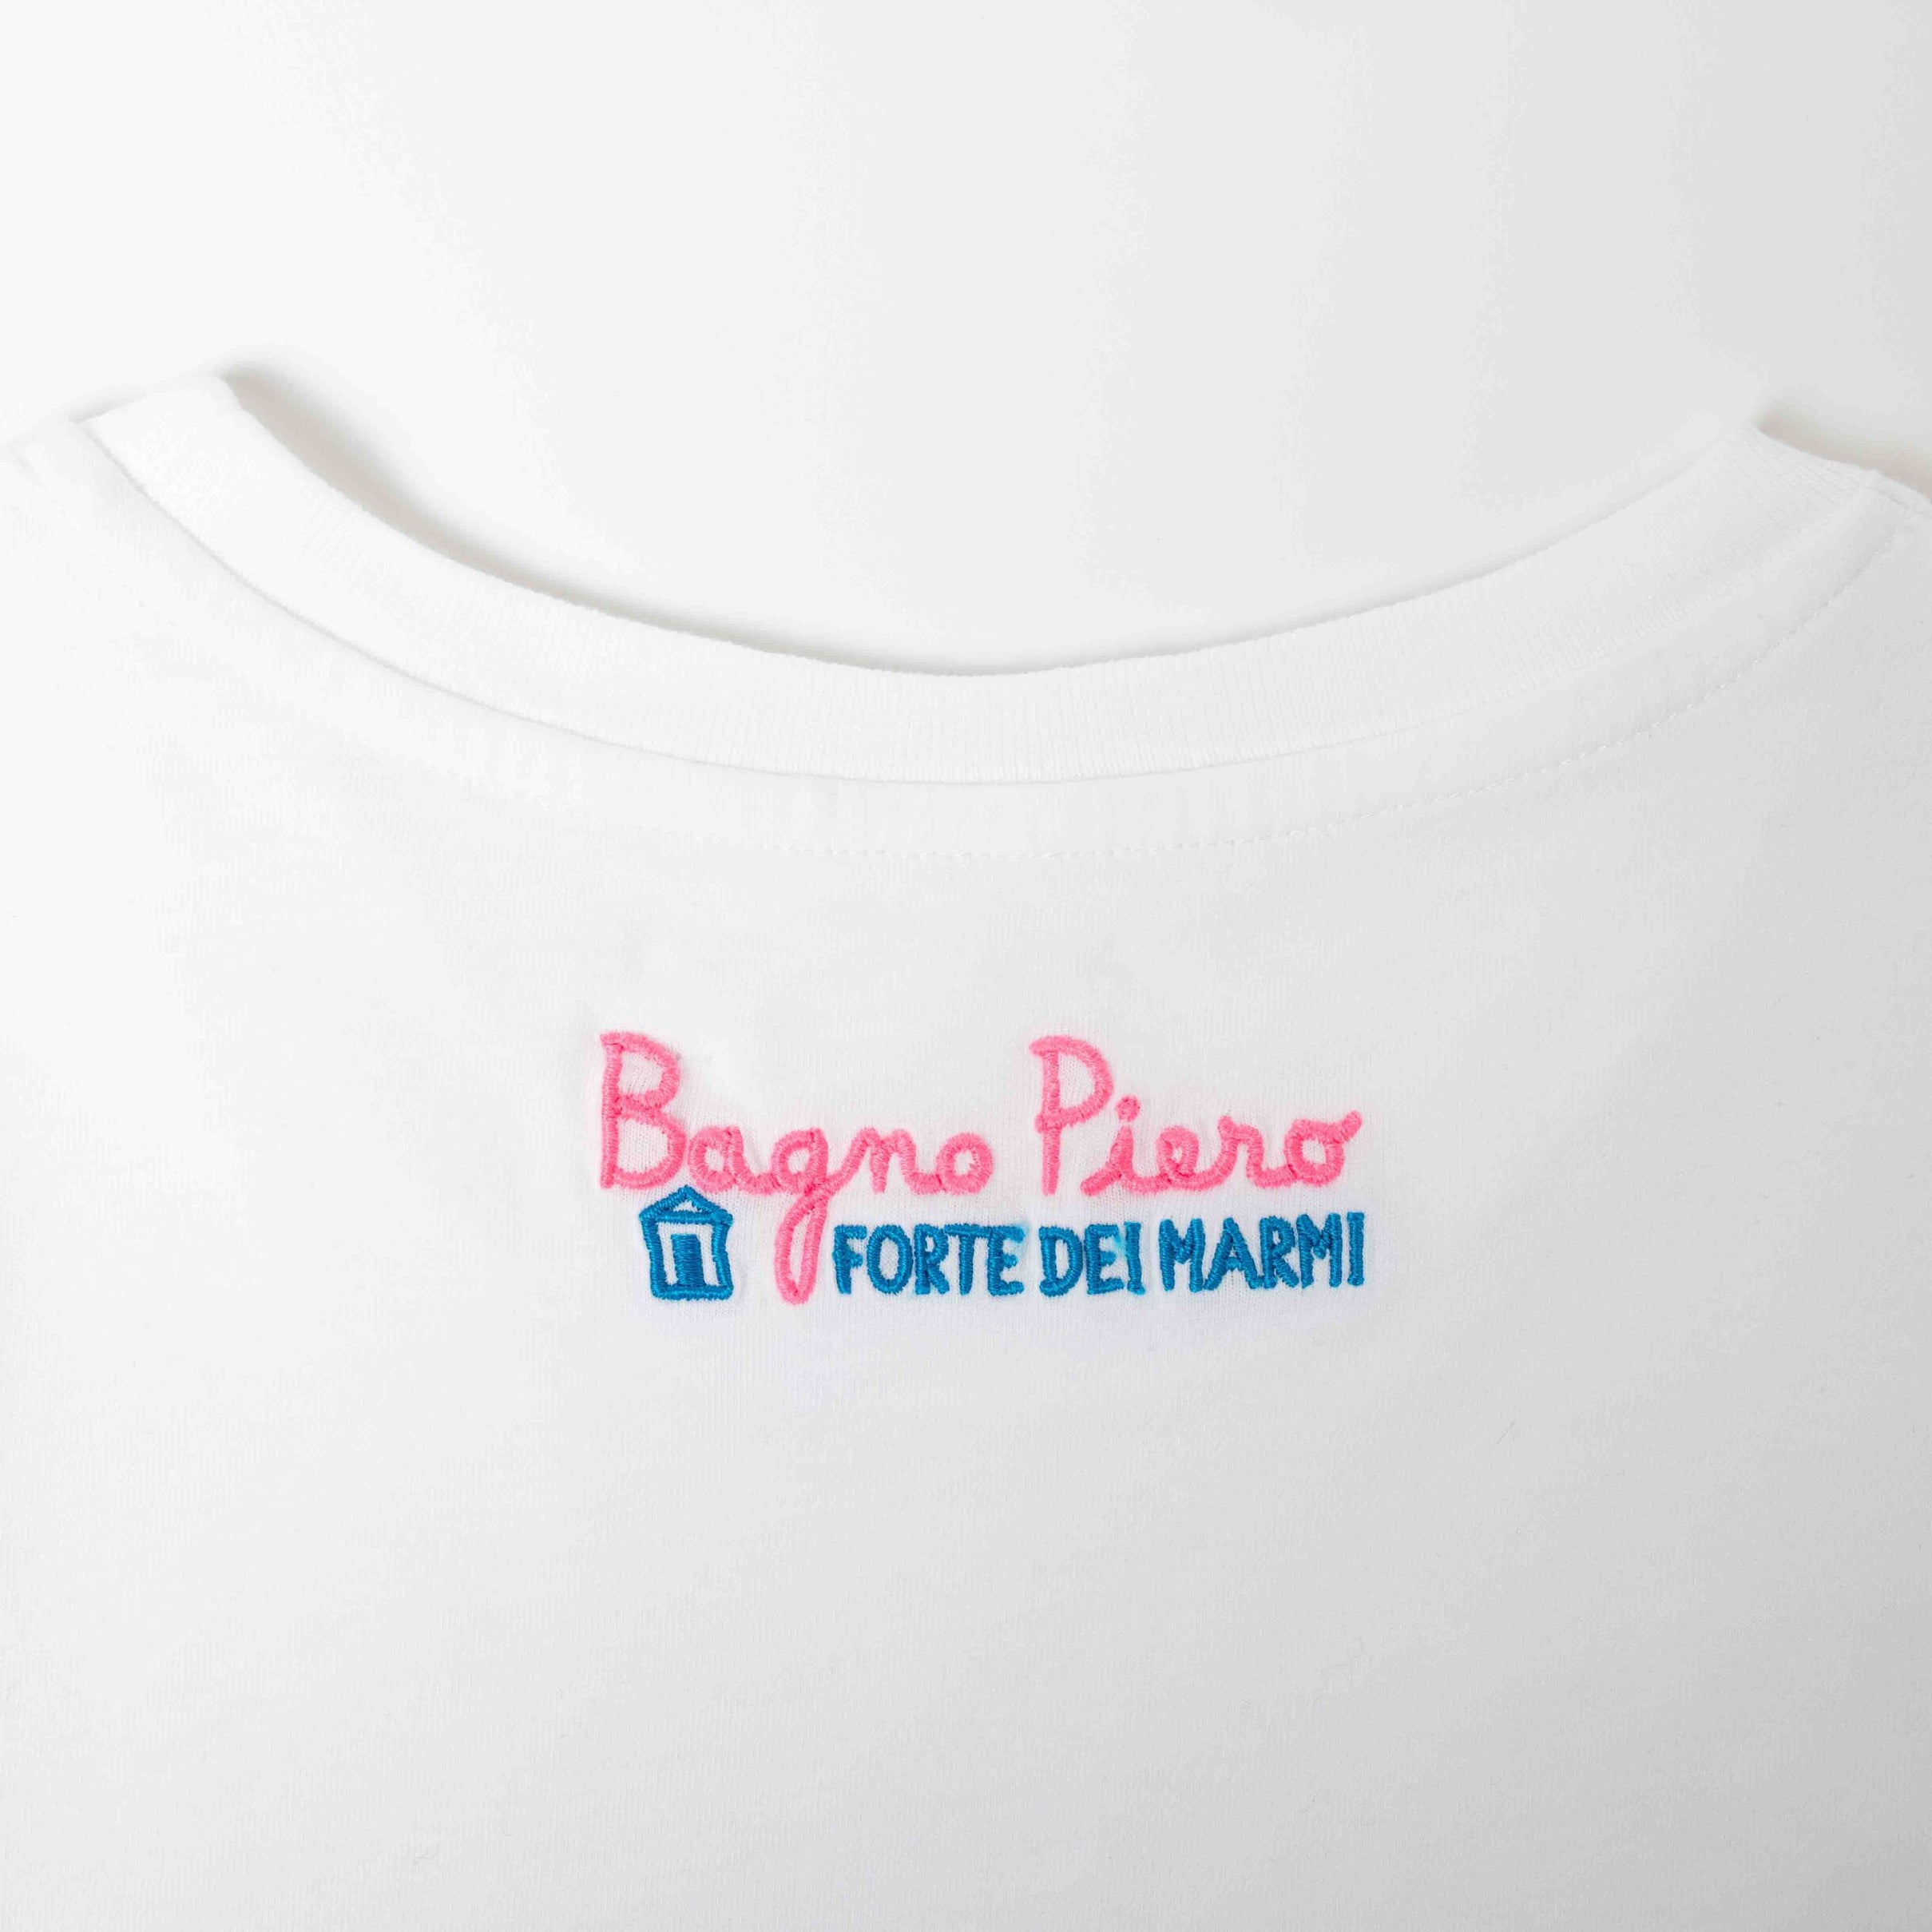 Bagno Piero Habituè women's t-shirt